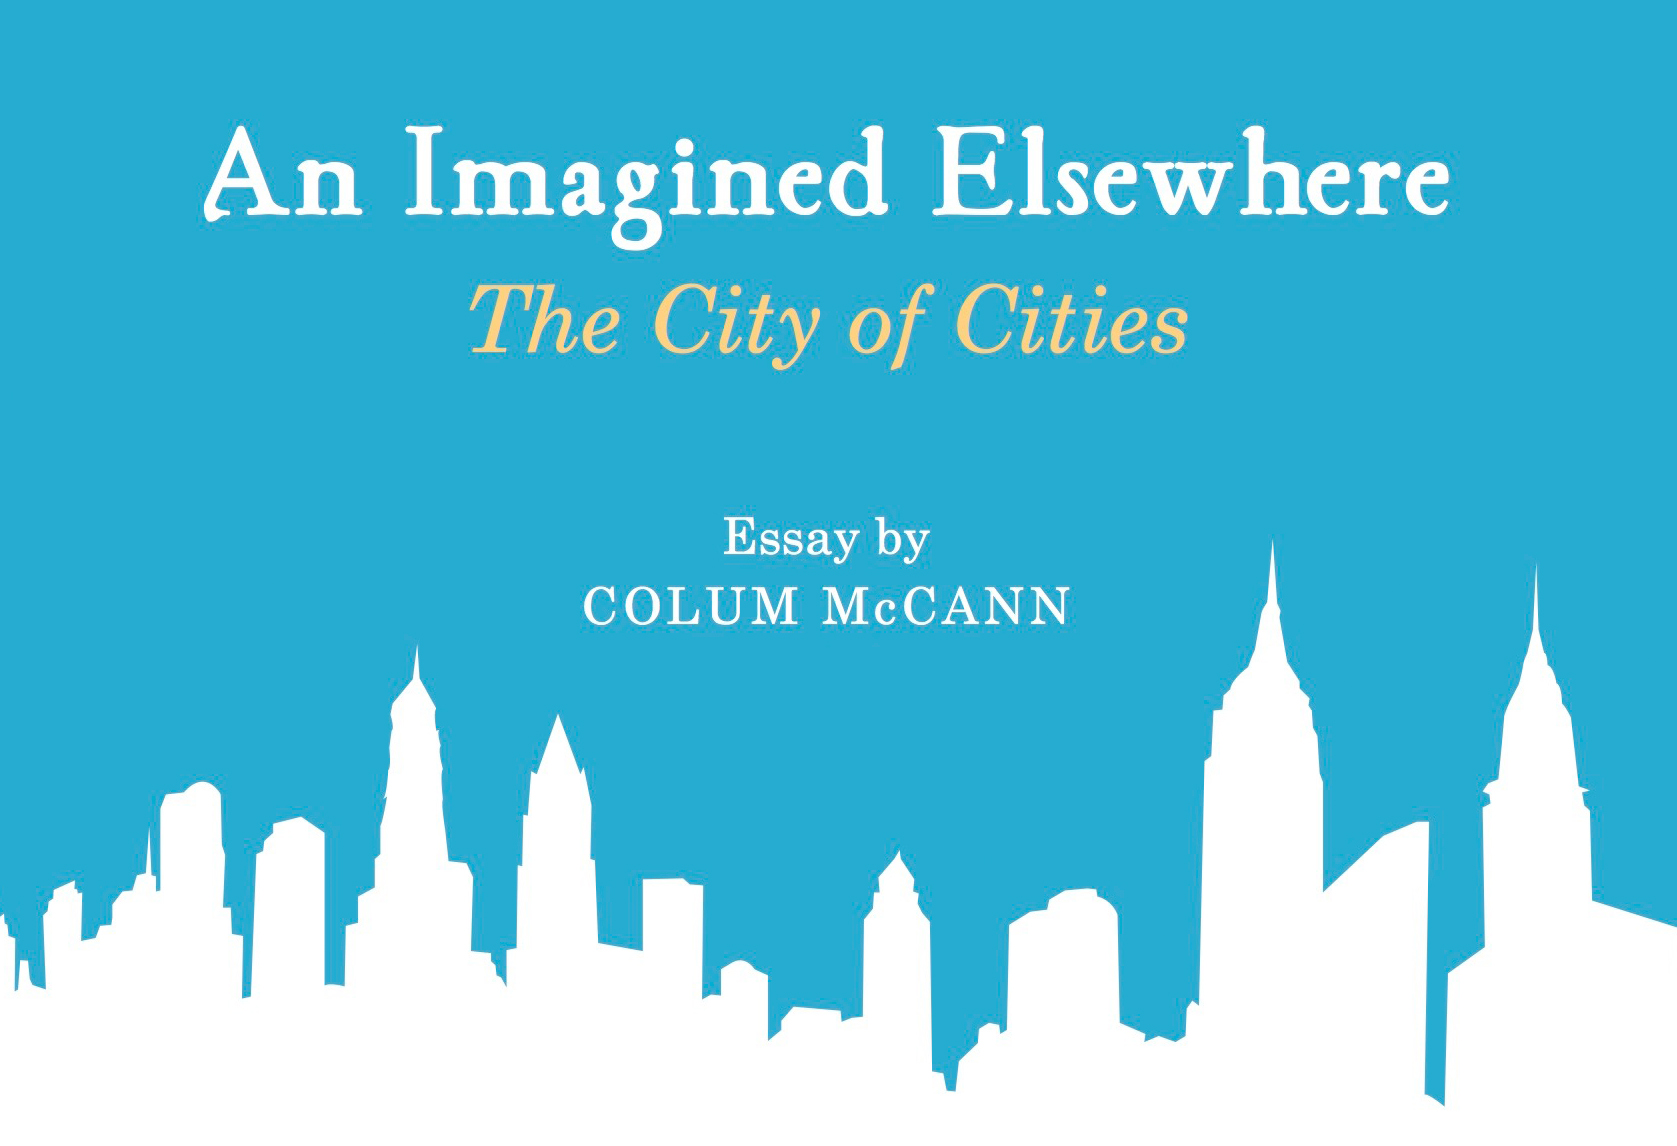 An Imagine Elsewhere, by Colum McCann